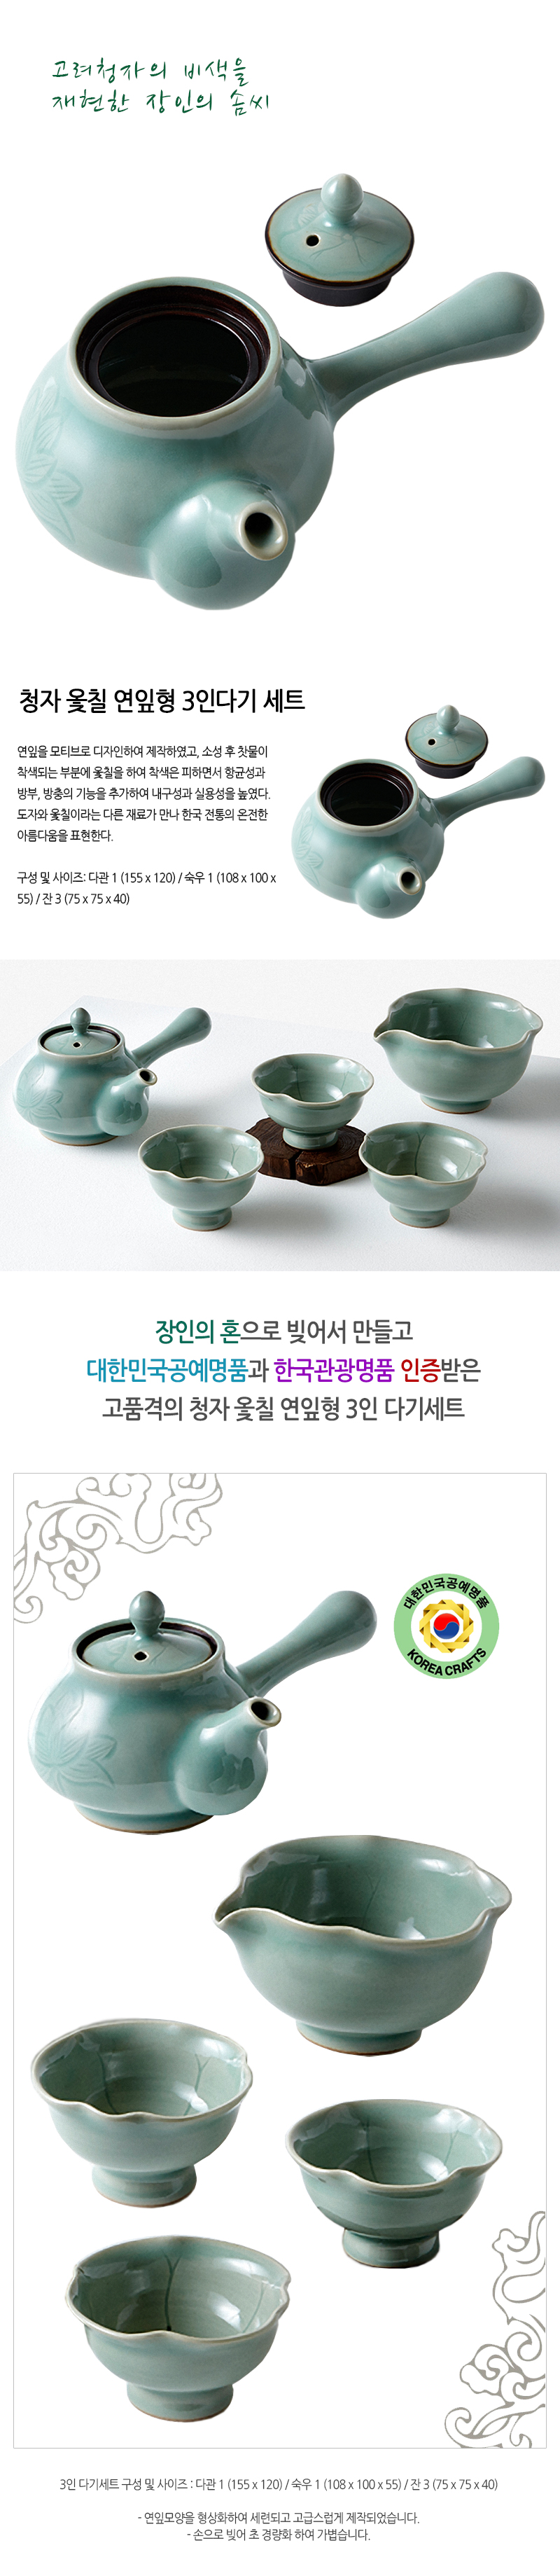 강진청자 국보, 청자 옷칠 연잎형 3인 다기세트 소개